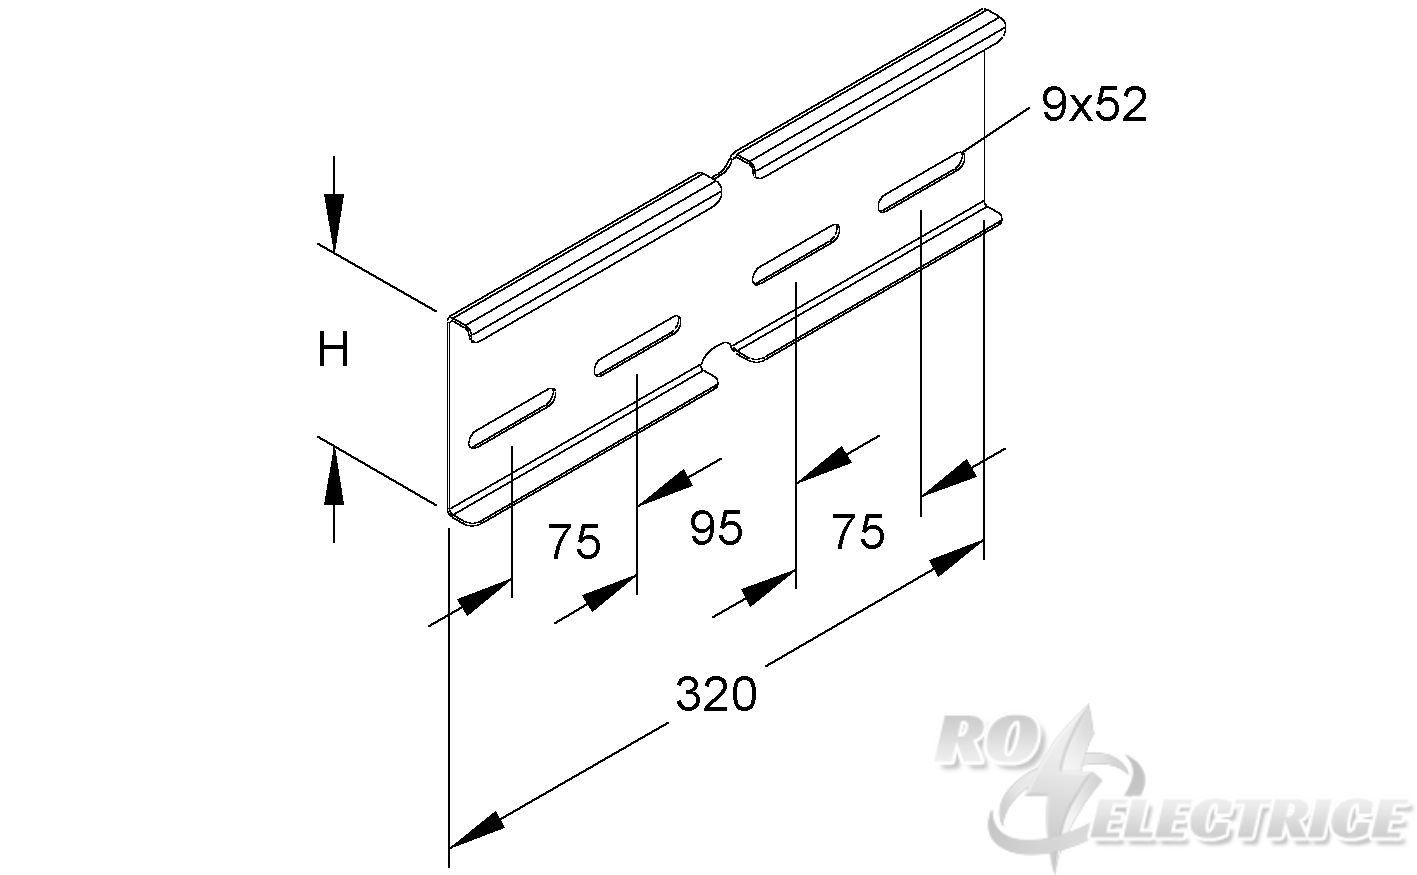 Winkelverbinder für KL, horizontal, Höhe 100 mm, Stahl, bandverzinkt DIN EN 10346, inkl. Zubehör